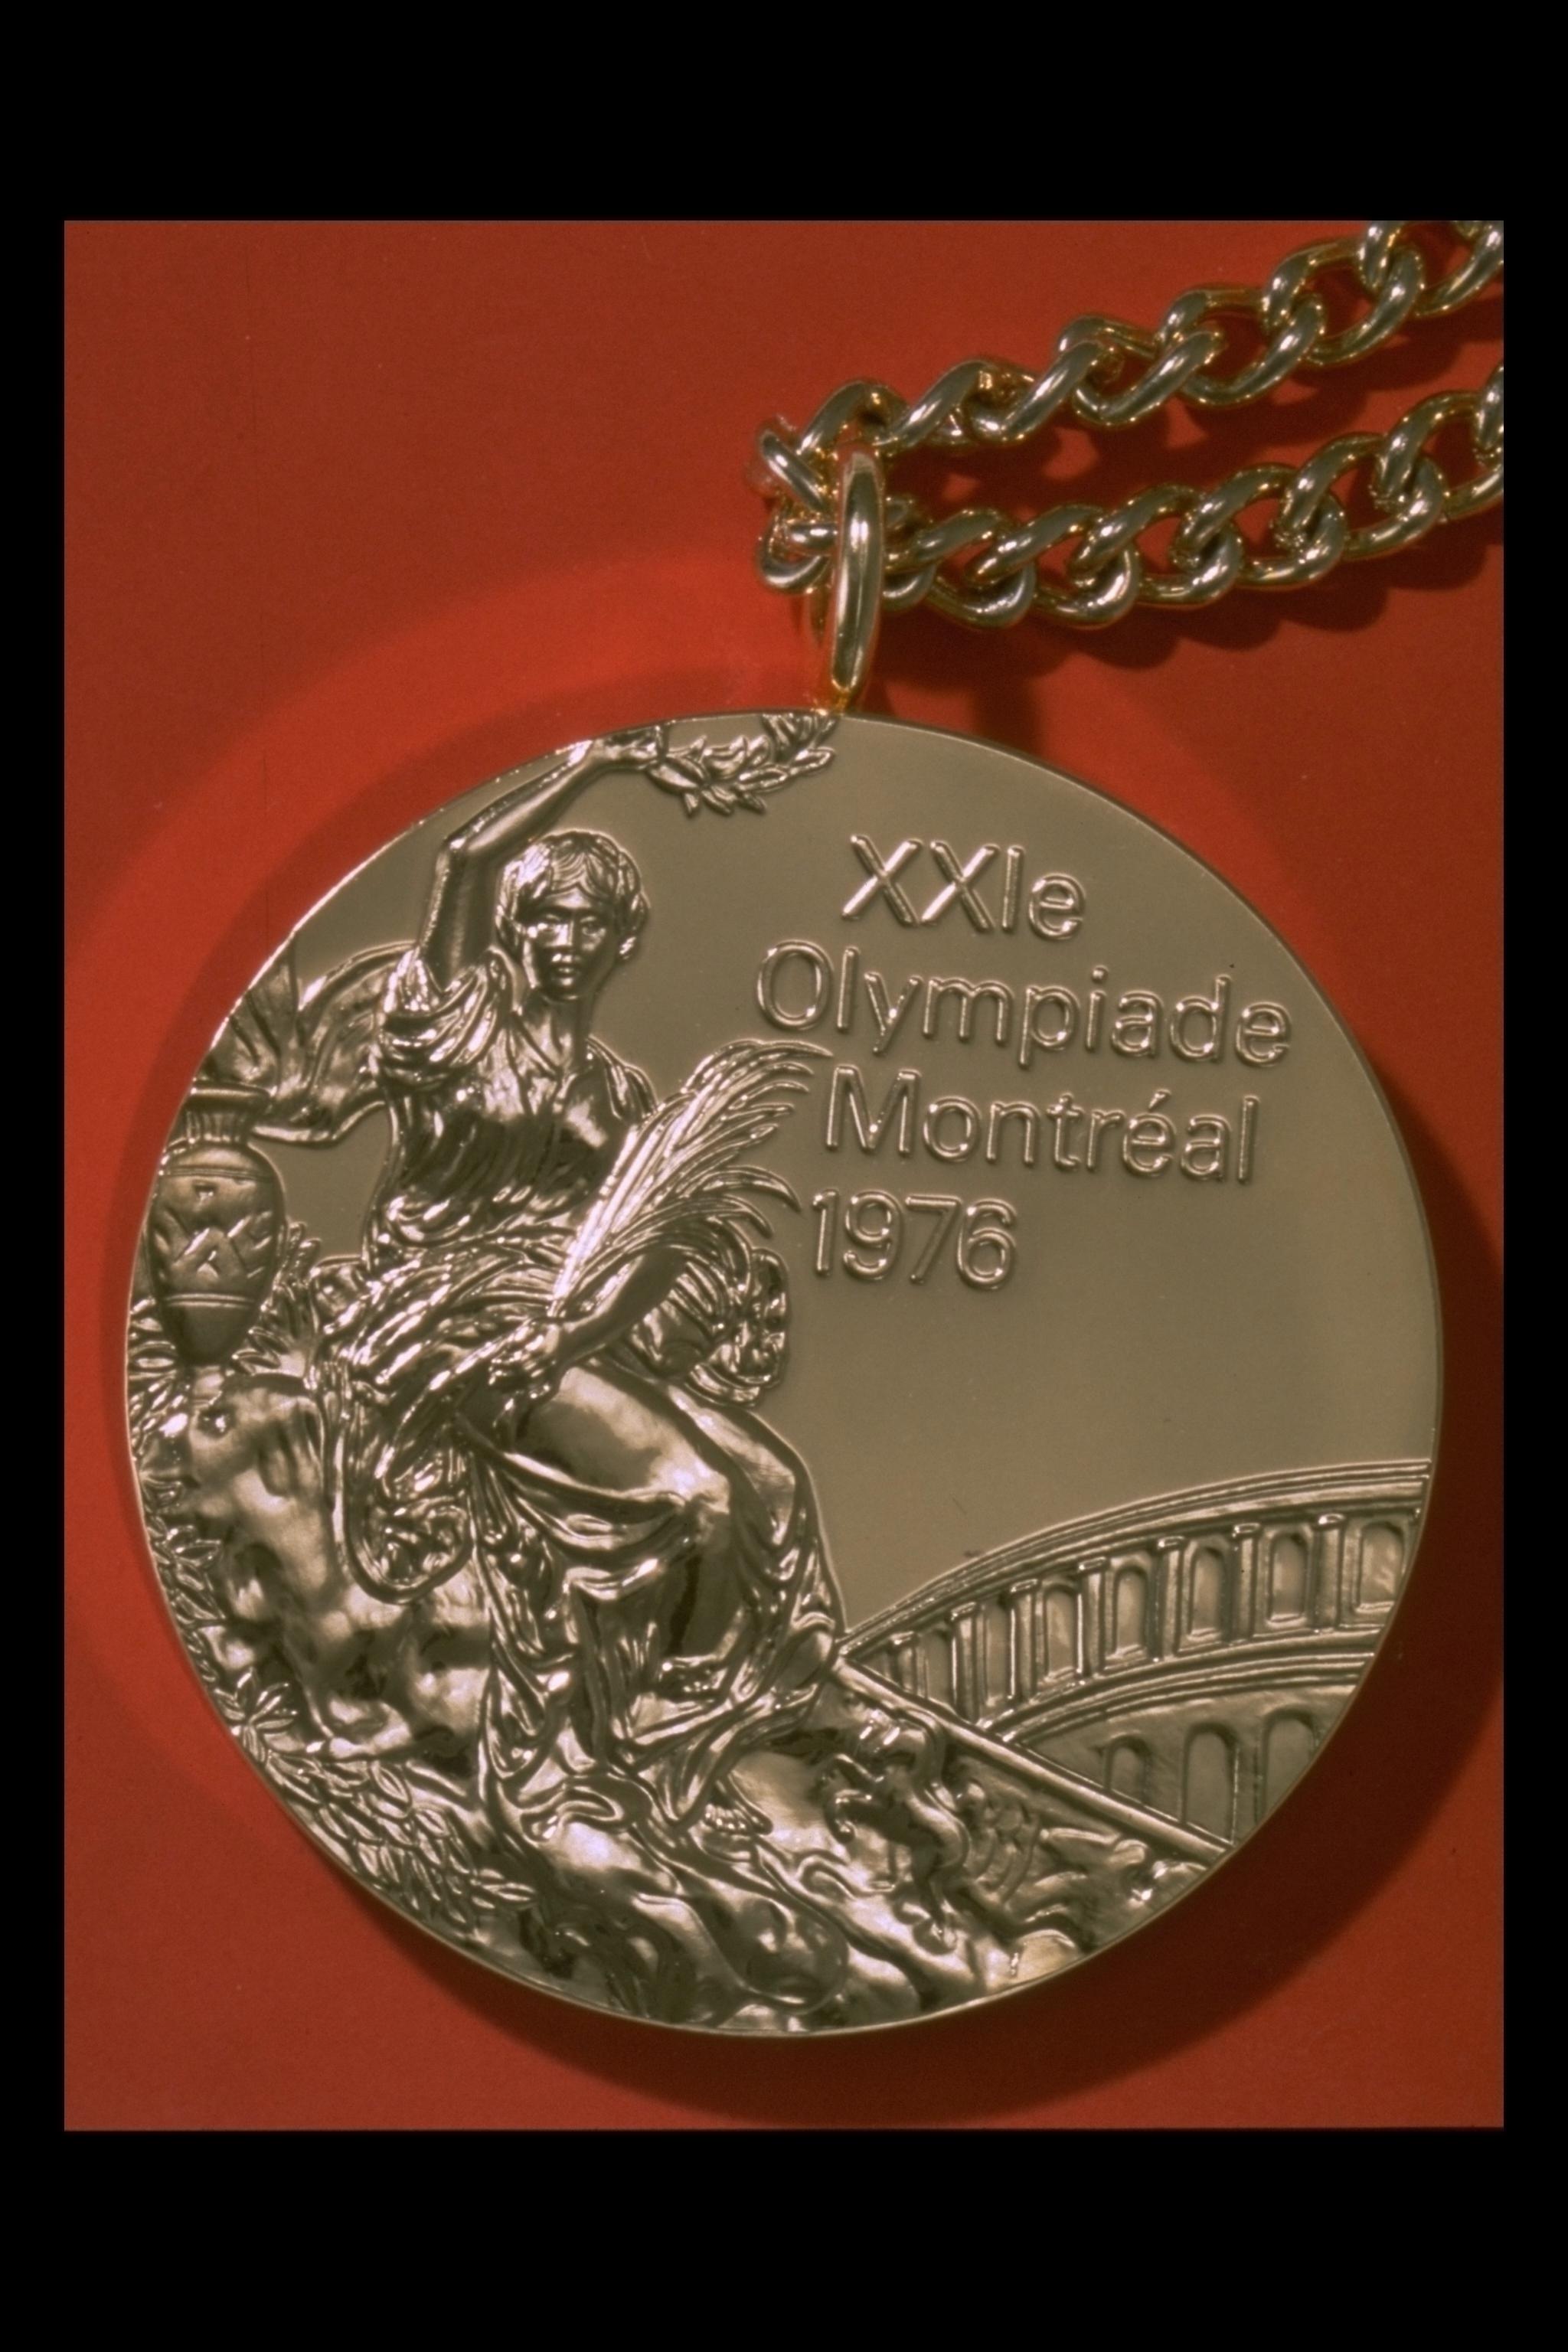 Photographie d'une médaille avec chaîne, avec mention « XXIe Olympiade Montréal 1976 ».